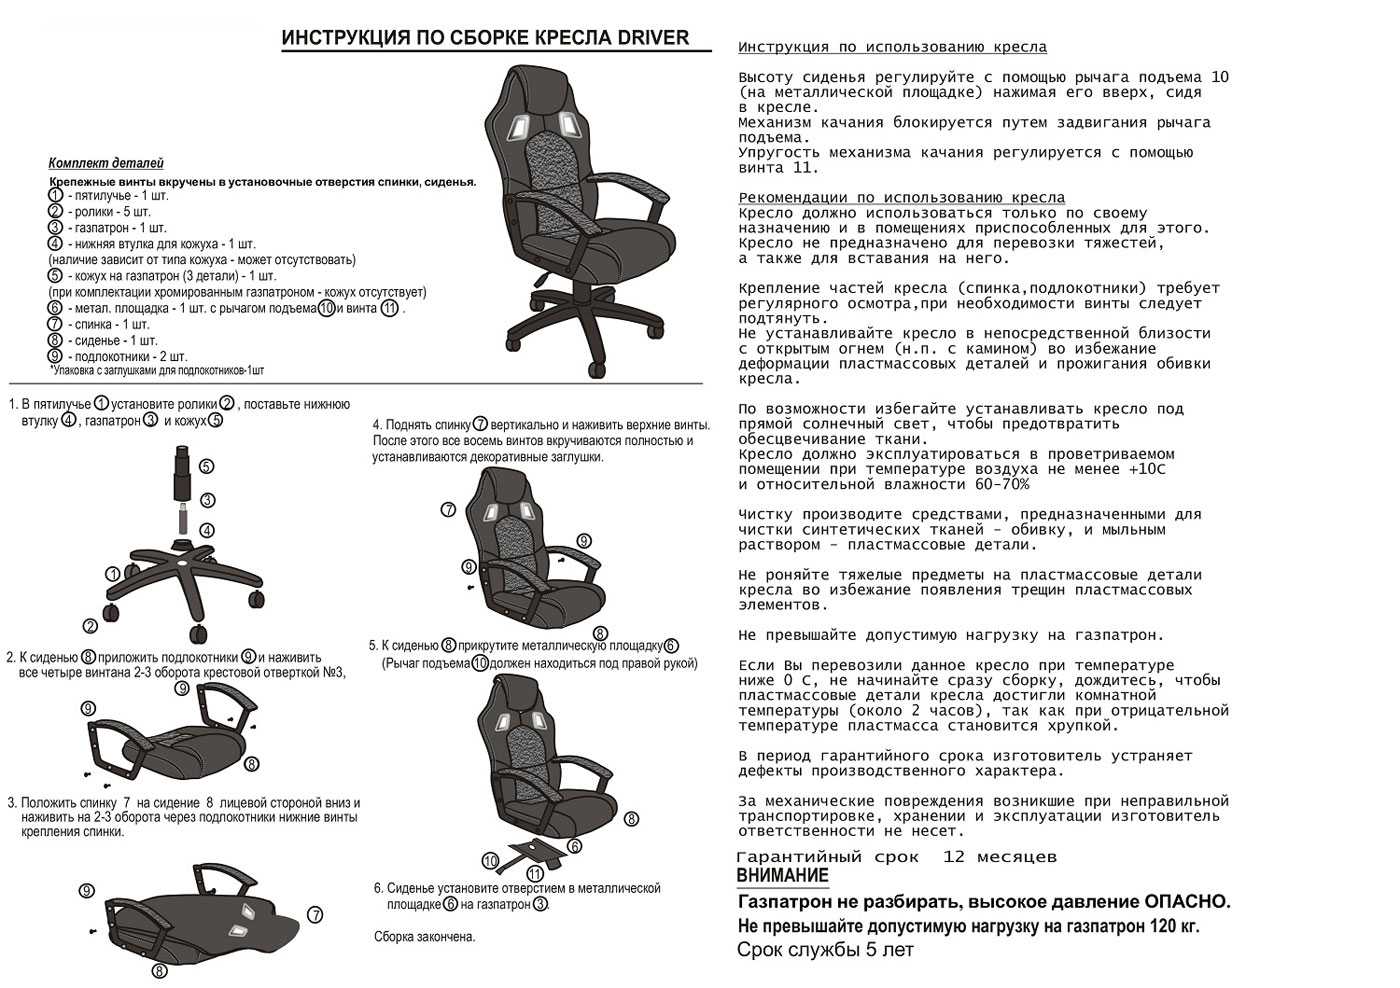 Как починить шефу стул. ремонт офисного кресла своими силами